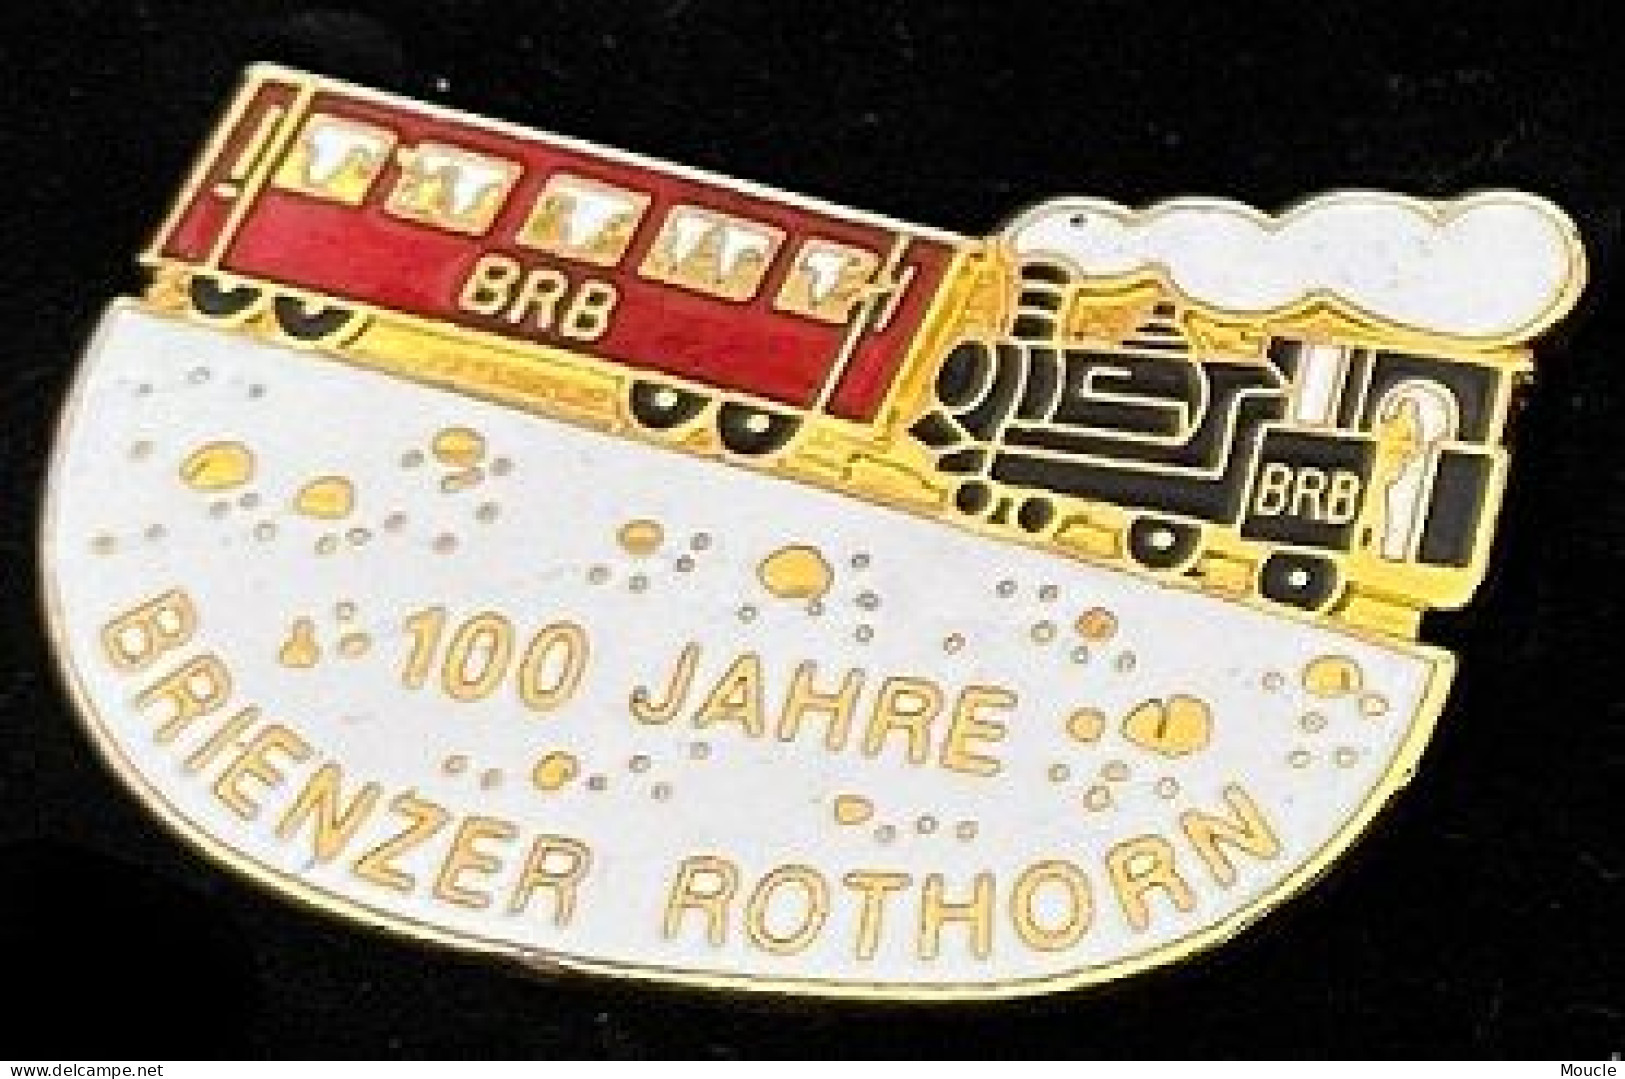 TRAIN - 100 JAHRE BRIENZER ROTHORN - WAGON - SUISSE - SCHWEIZ - BRB - ZUG - TRENO - TREN -  EGF -  (ROSE) - Transports